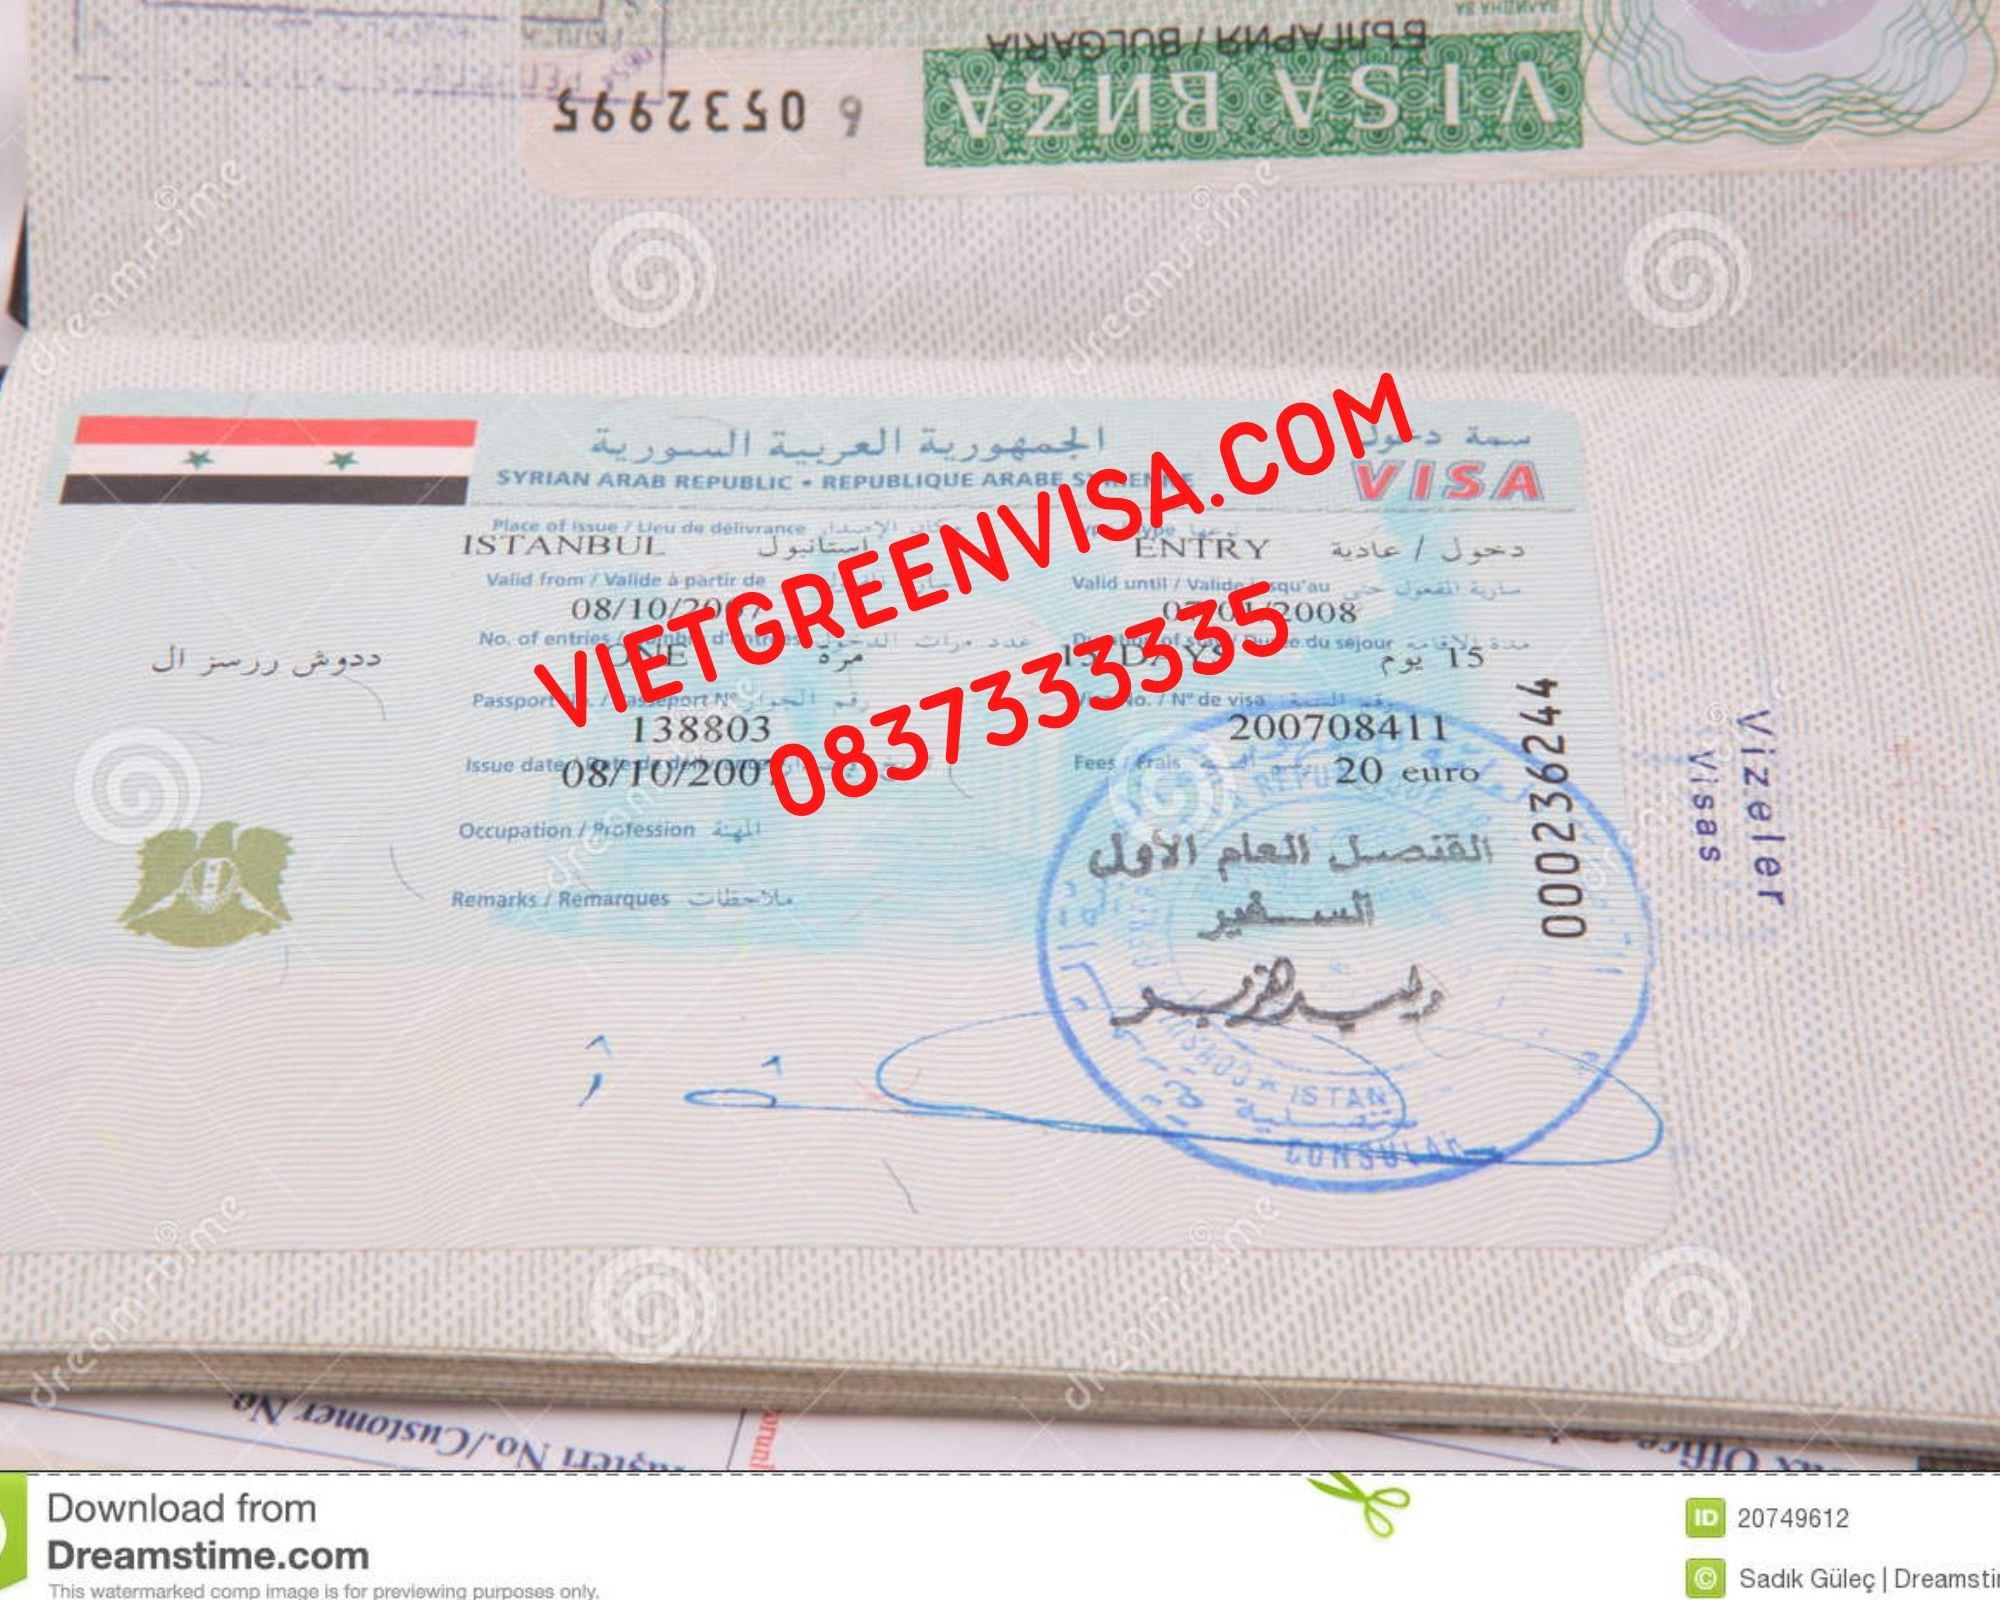 Dịch vụ visa Syria công tác cùng Vietgreenvisa